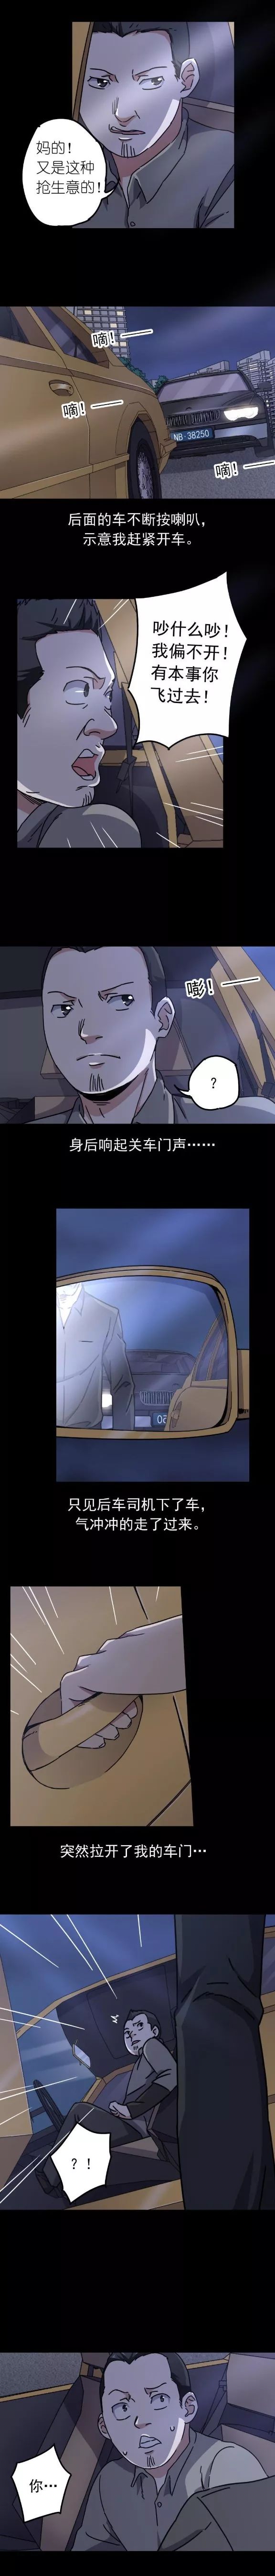 驚悚漫畫《約車殺人案》深夜打車一定要小心 靈異 第5張